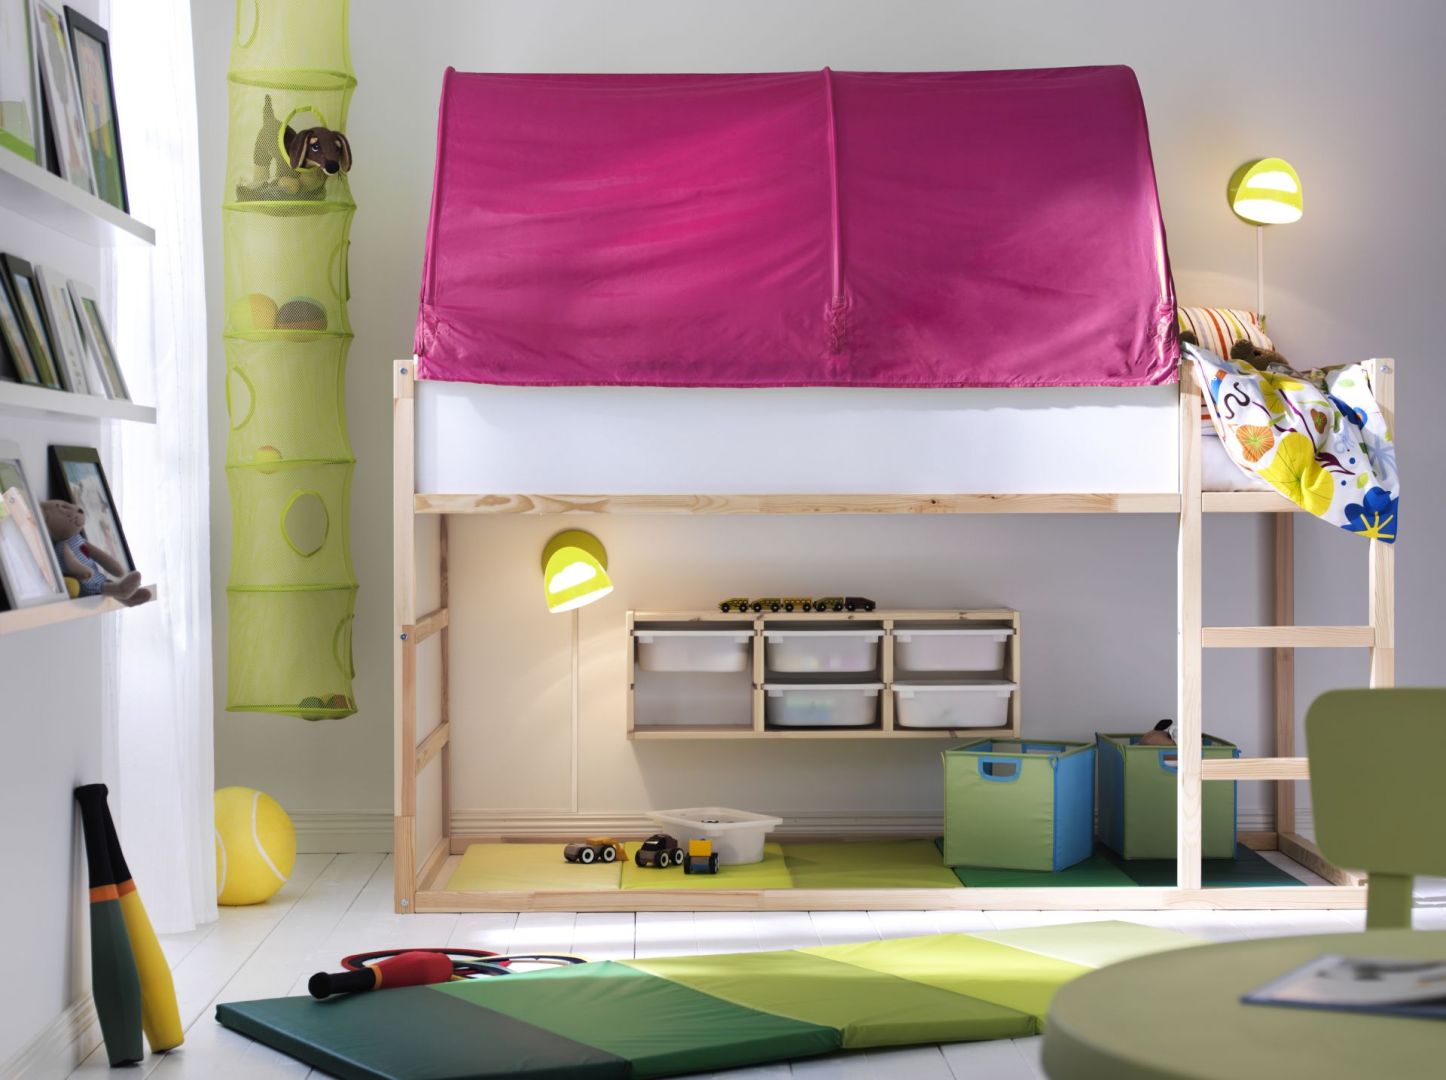 Baldachim nad łóżkiem sprawi, że dziecko podczas snu będzie czuło się bezpiecznie. Fot. IKEA